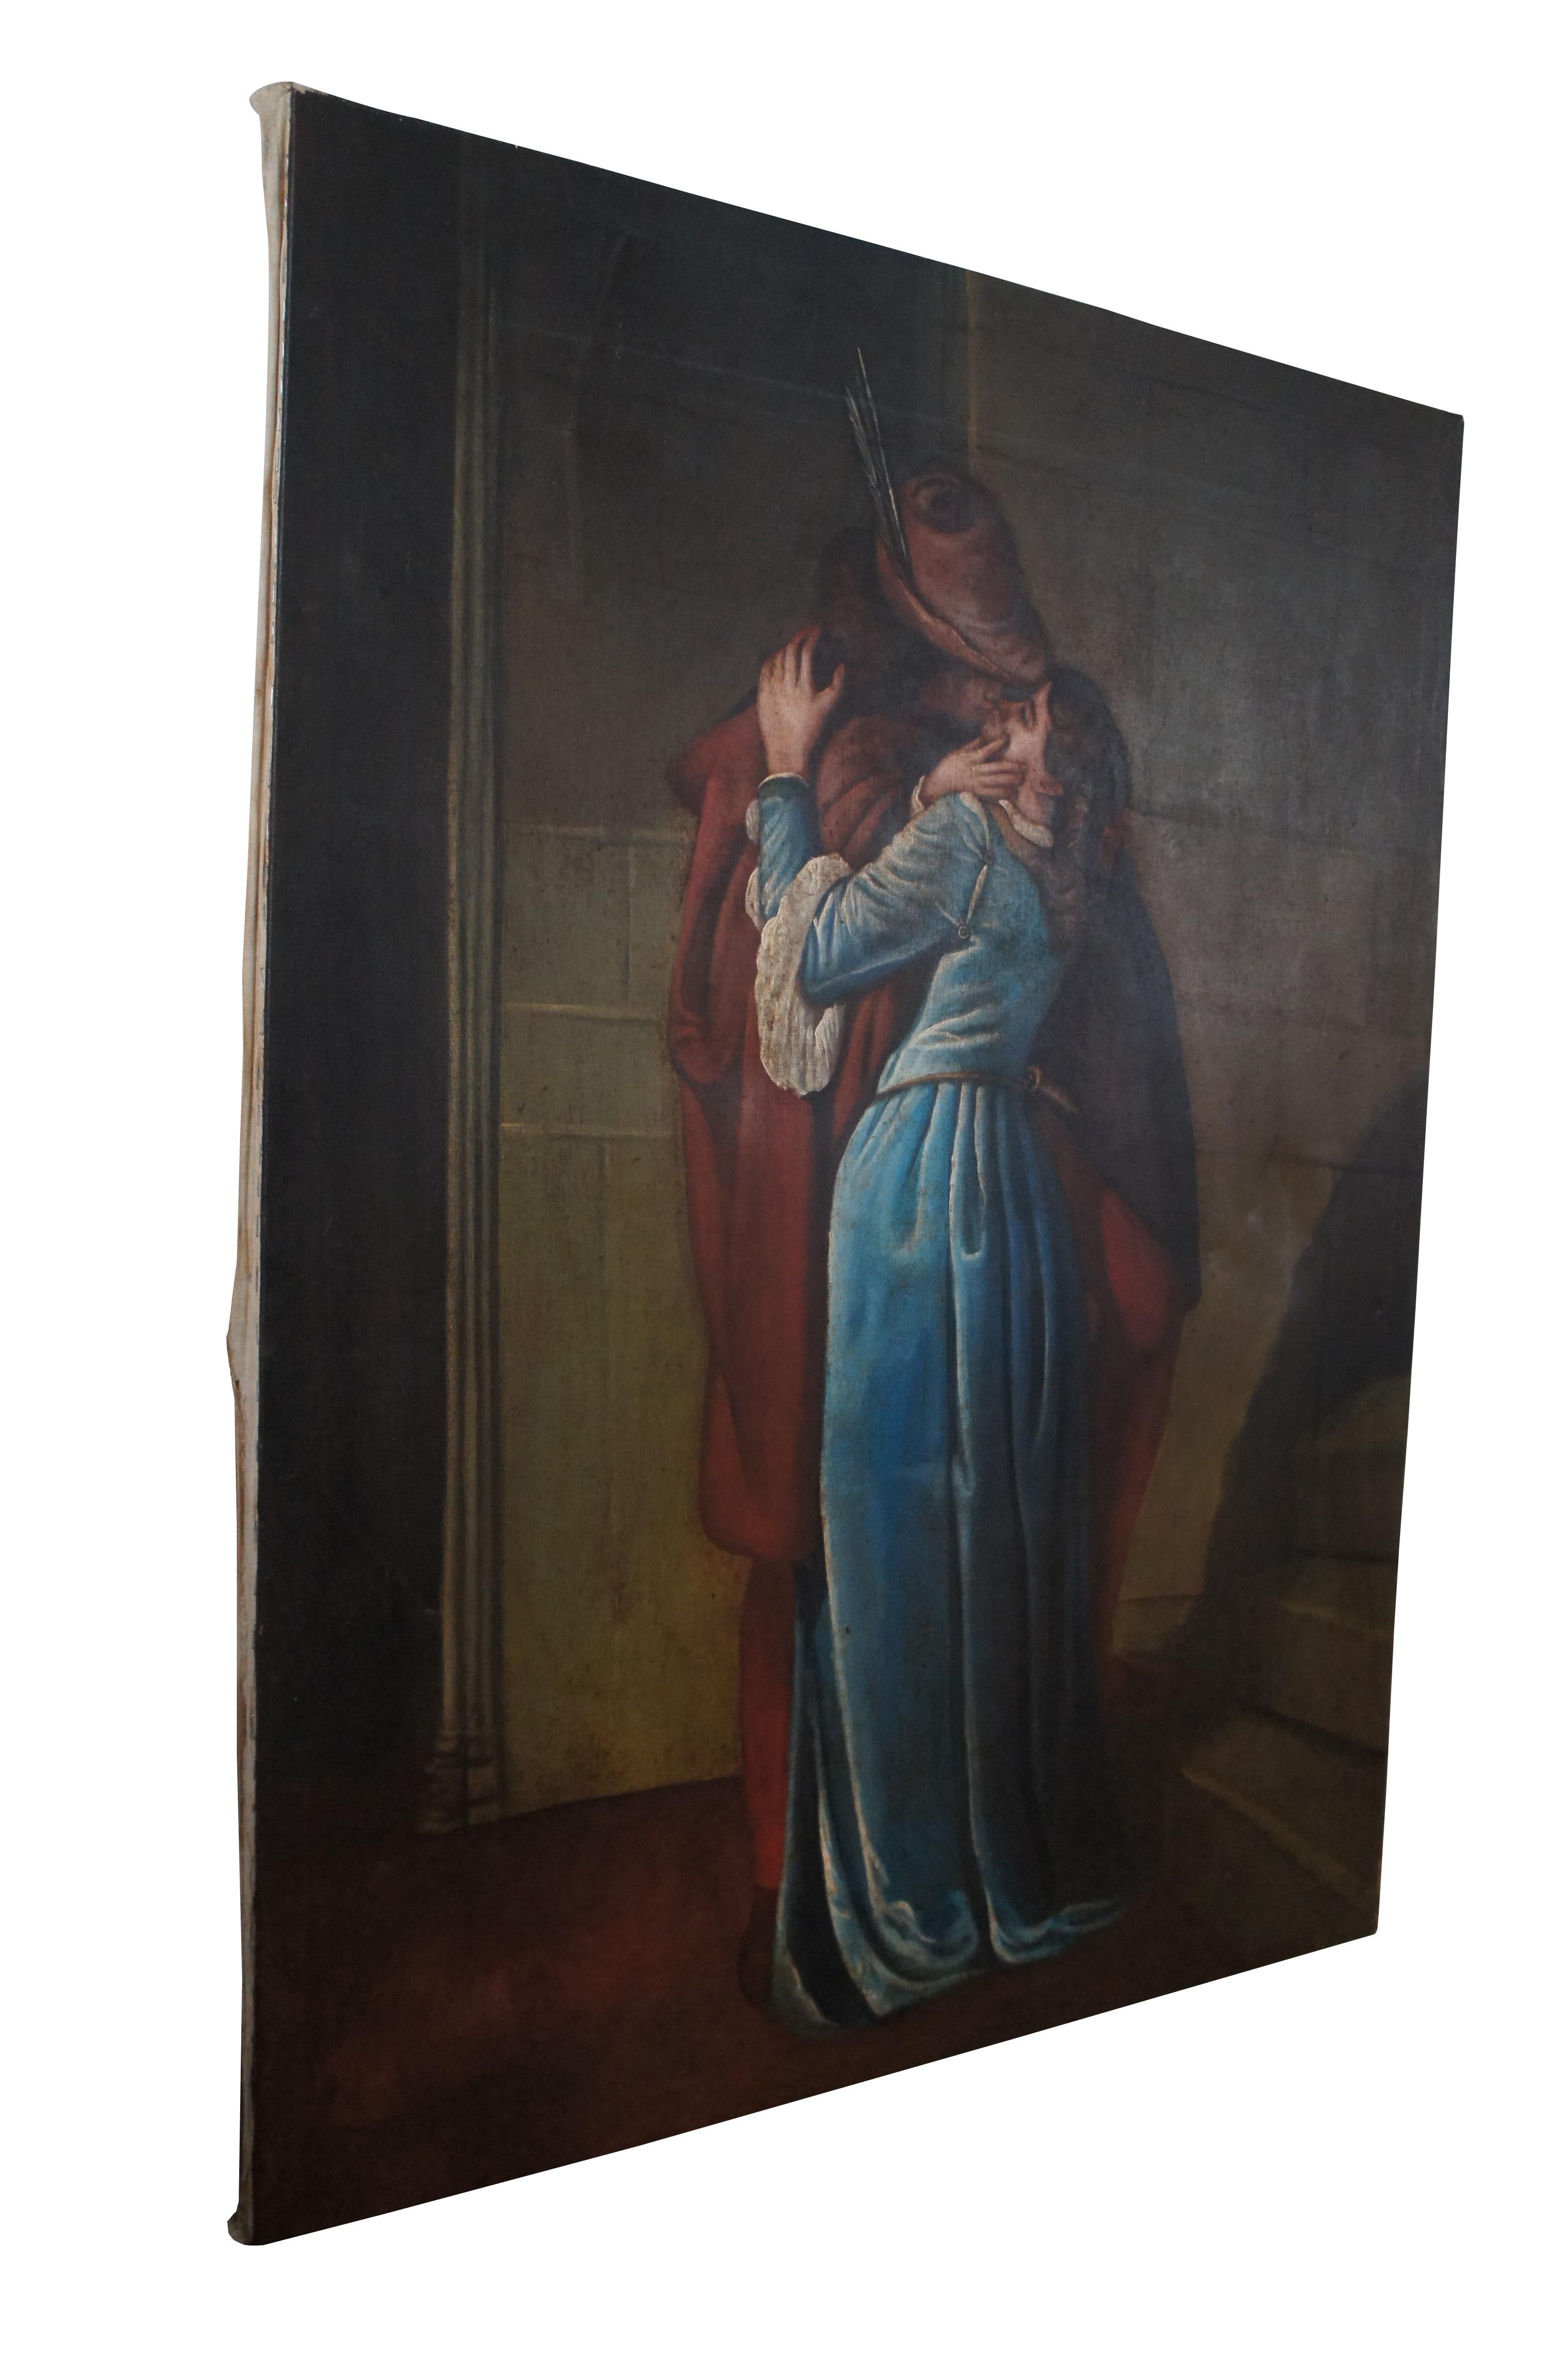 Vintage-Reproduktion eines Gemäldes auf Leinen von Hidalgo mit dem Motiv Der Kuss von Francesco Heyez.

Il bacio (italienische Aussprache: [il ˈbaːtʃo]; Der Kuss) ist ein Gemälde des italienischen Künstlers Francesco Hayez aus dem Jahr 1859. Es ist